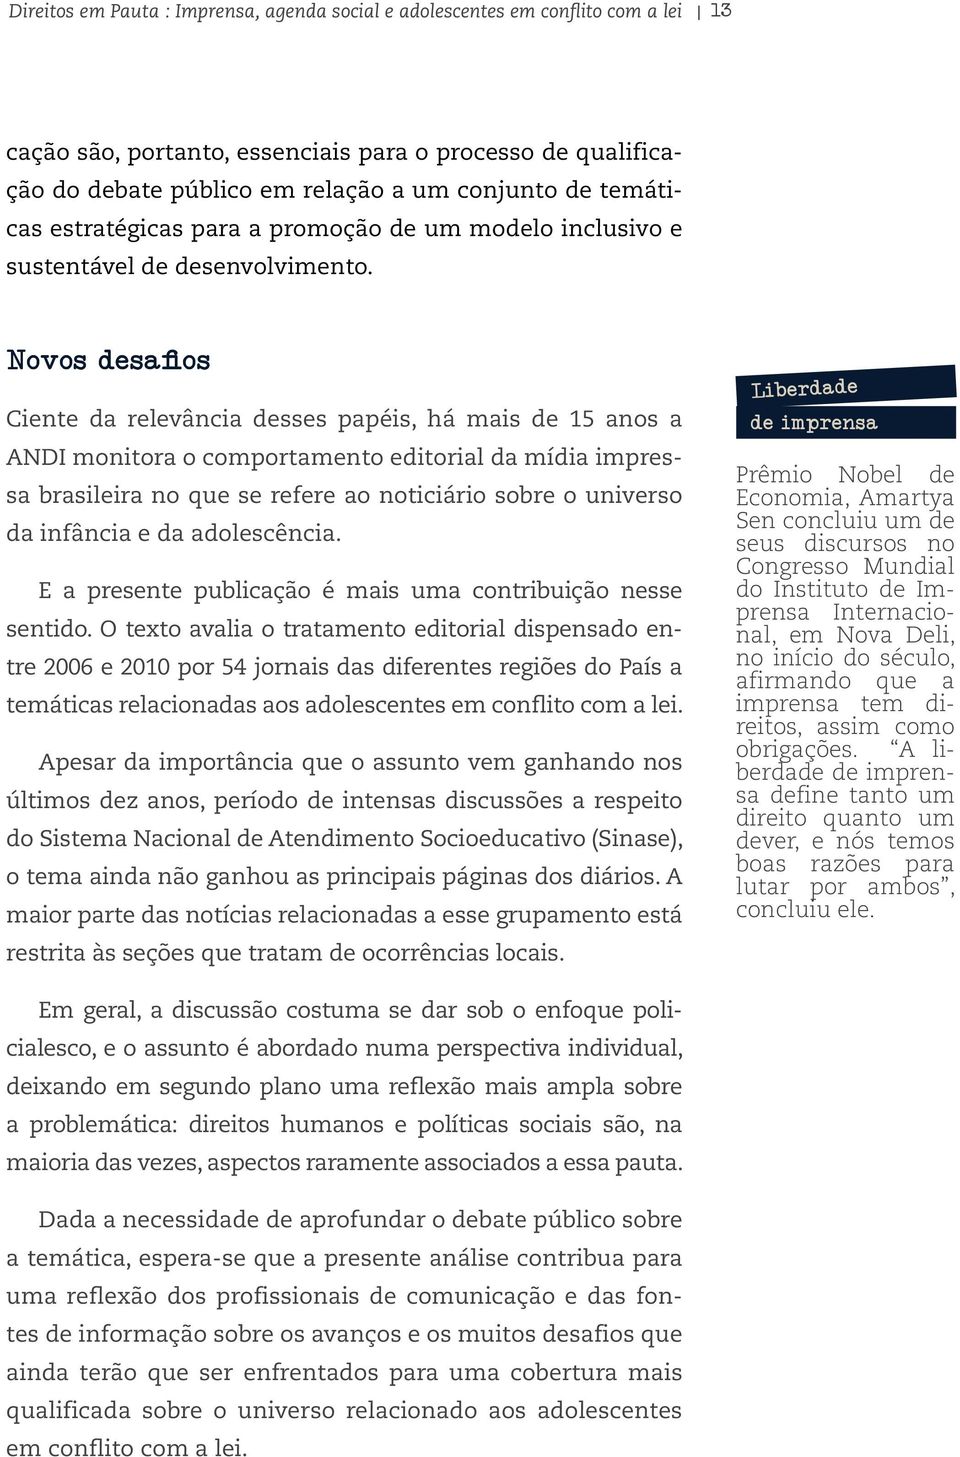 Novos desafios Ciente da relevância desses papéis, há mais de 15 anos a ANDI monitora o comportamento editorial da mídia impressa brasileira no que se refere ao noticiário sobre o universo da